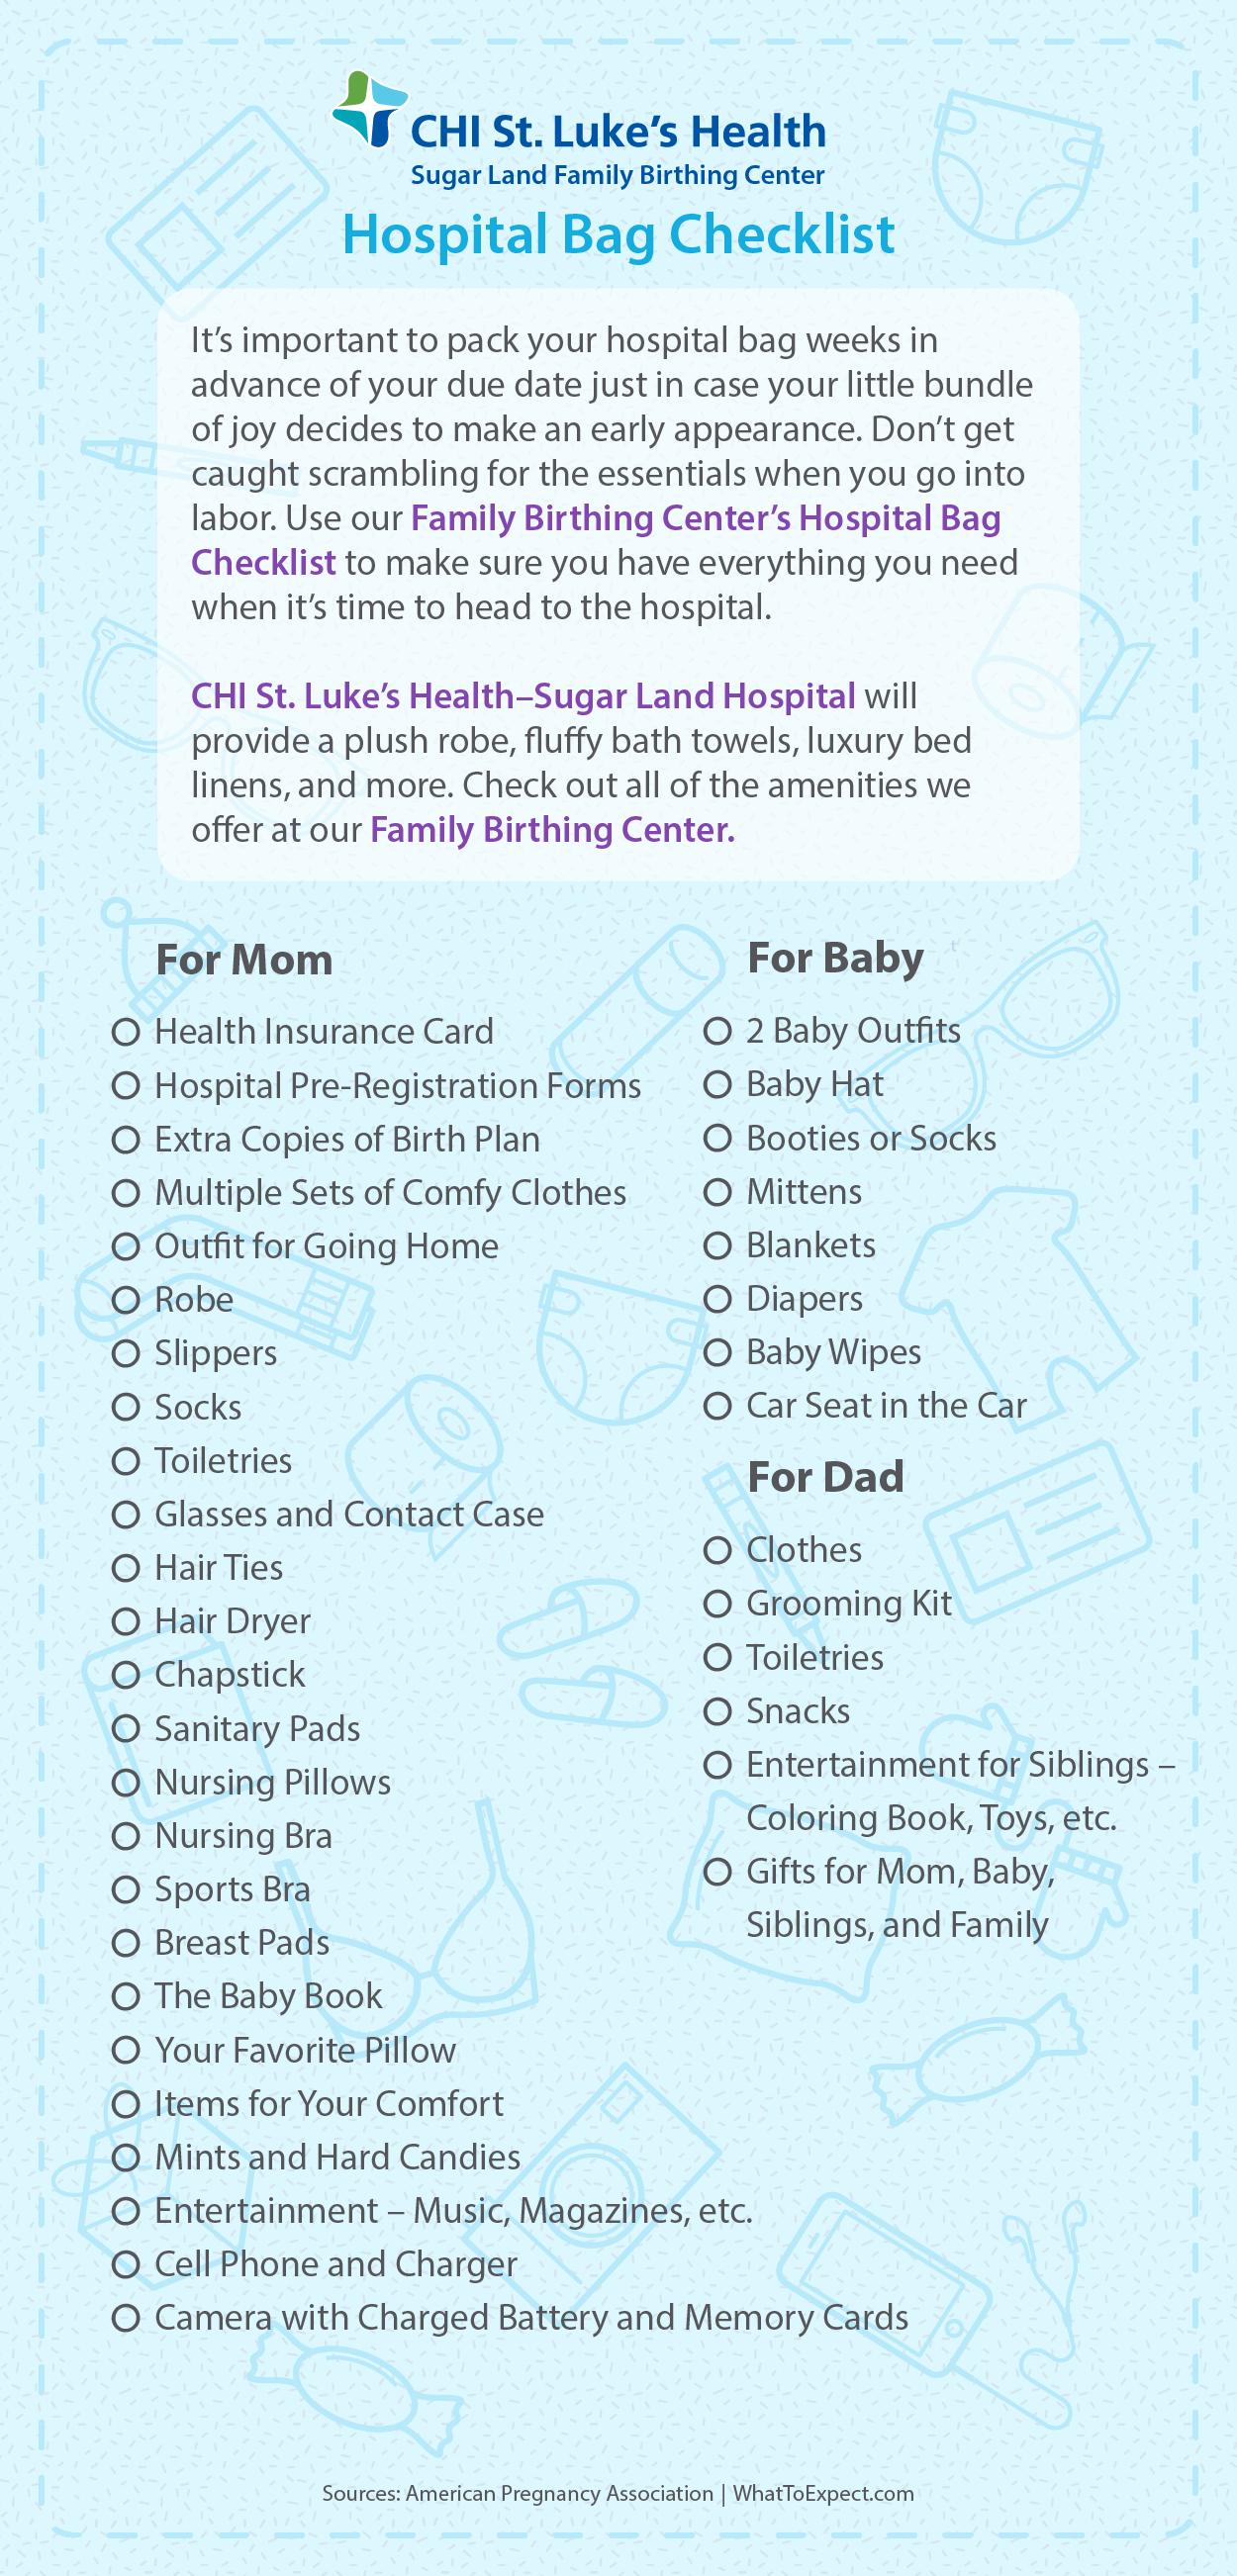 https://www.stlukeshealth.org/content/dam/stlukeshealth/images/hospital-bag-checklist-0.jpg